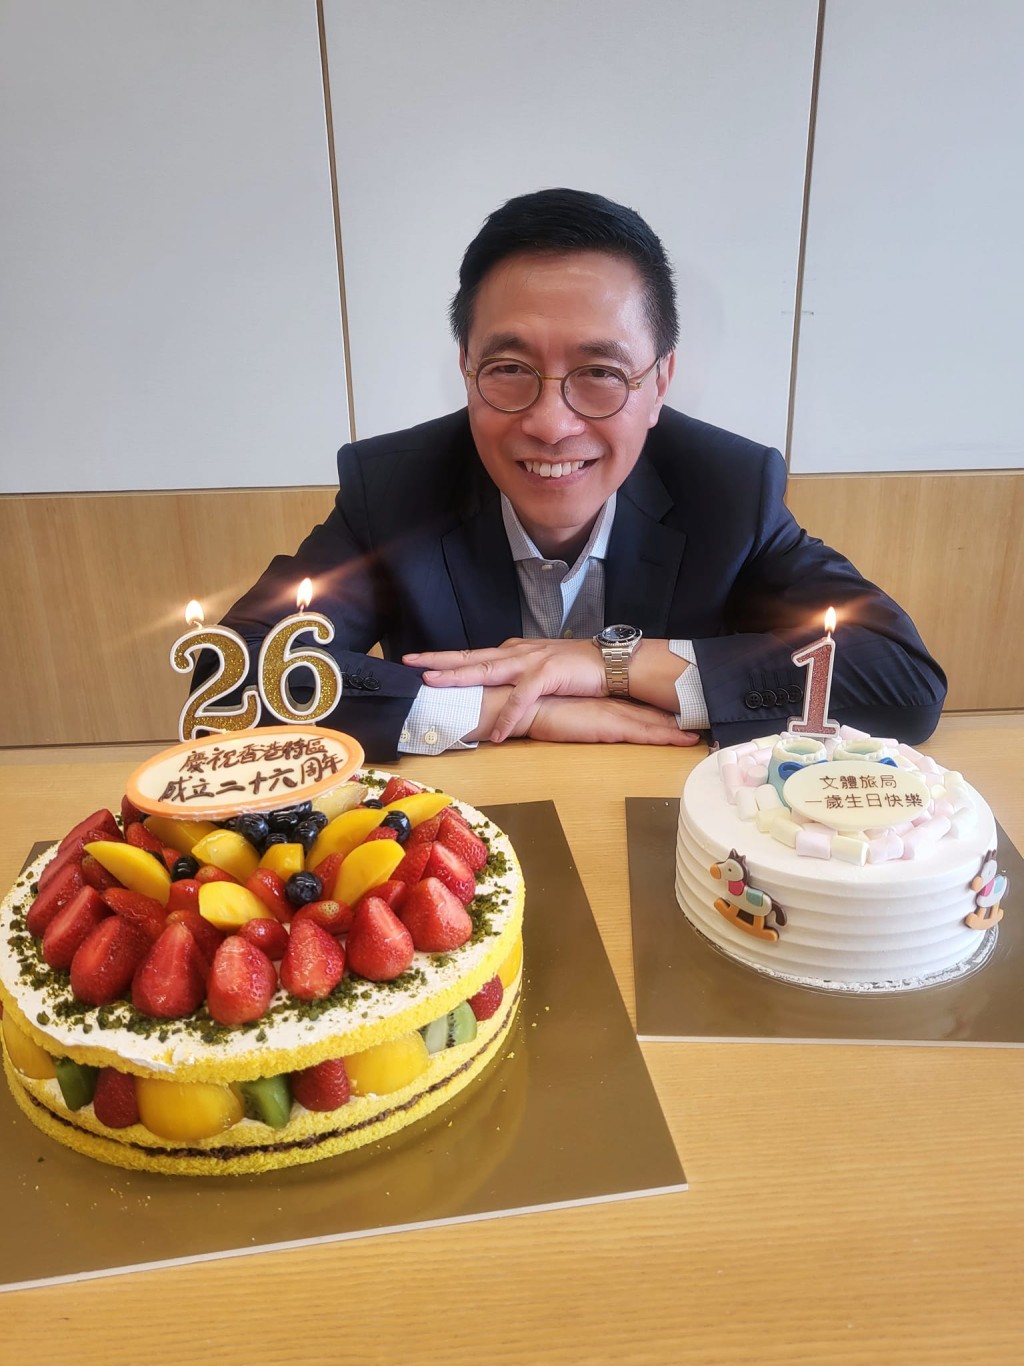 杨润雄跟工作团队一起切蛋糕庆祝，同时总结过去一年的工作以及展望未来发展。文化体育及旅游局FB图片